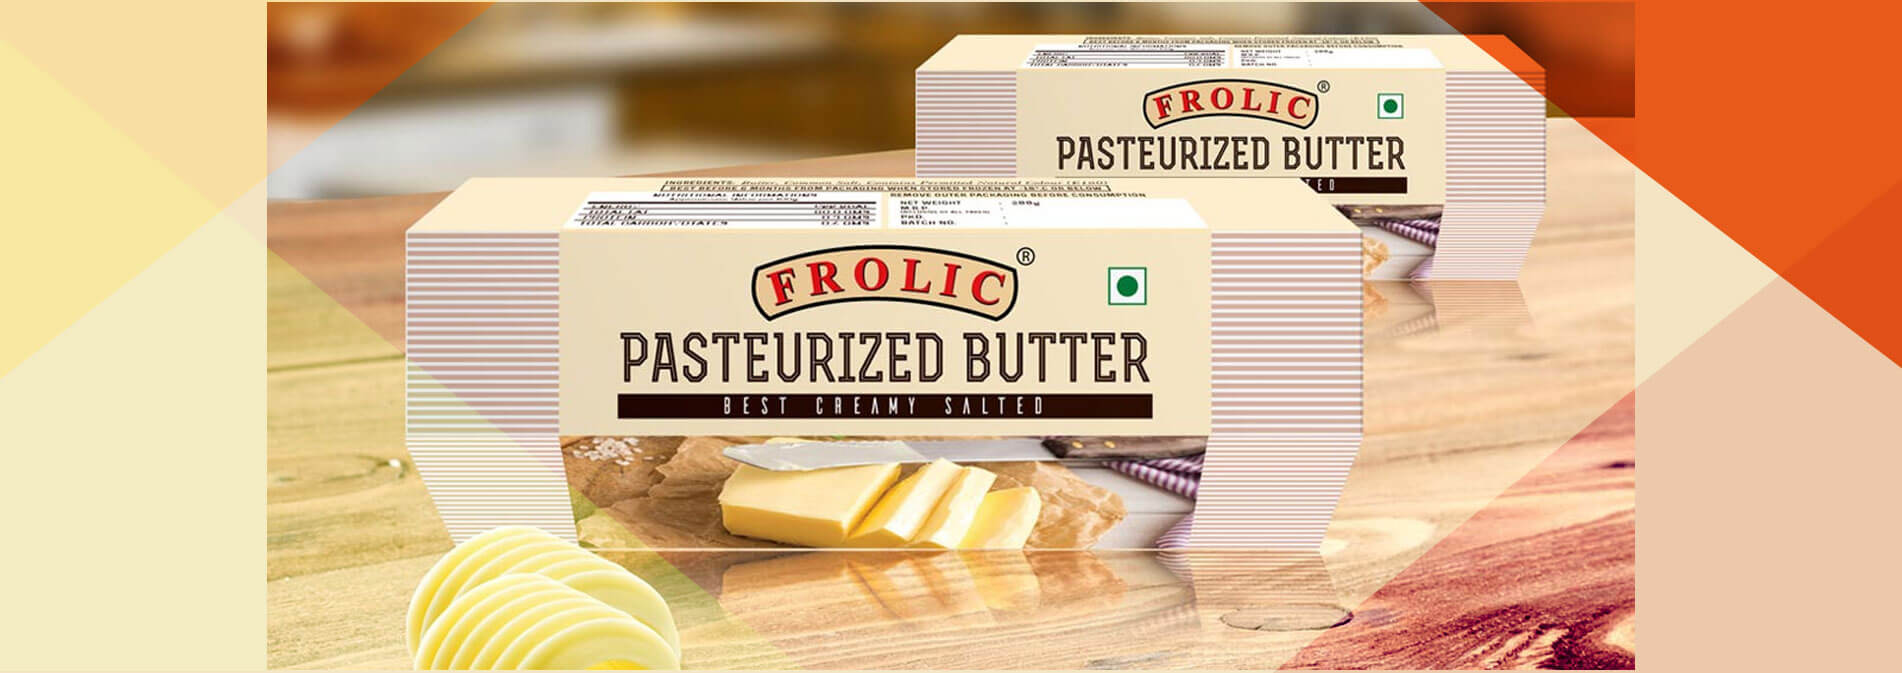 butter-pack-design